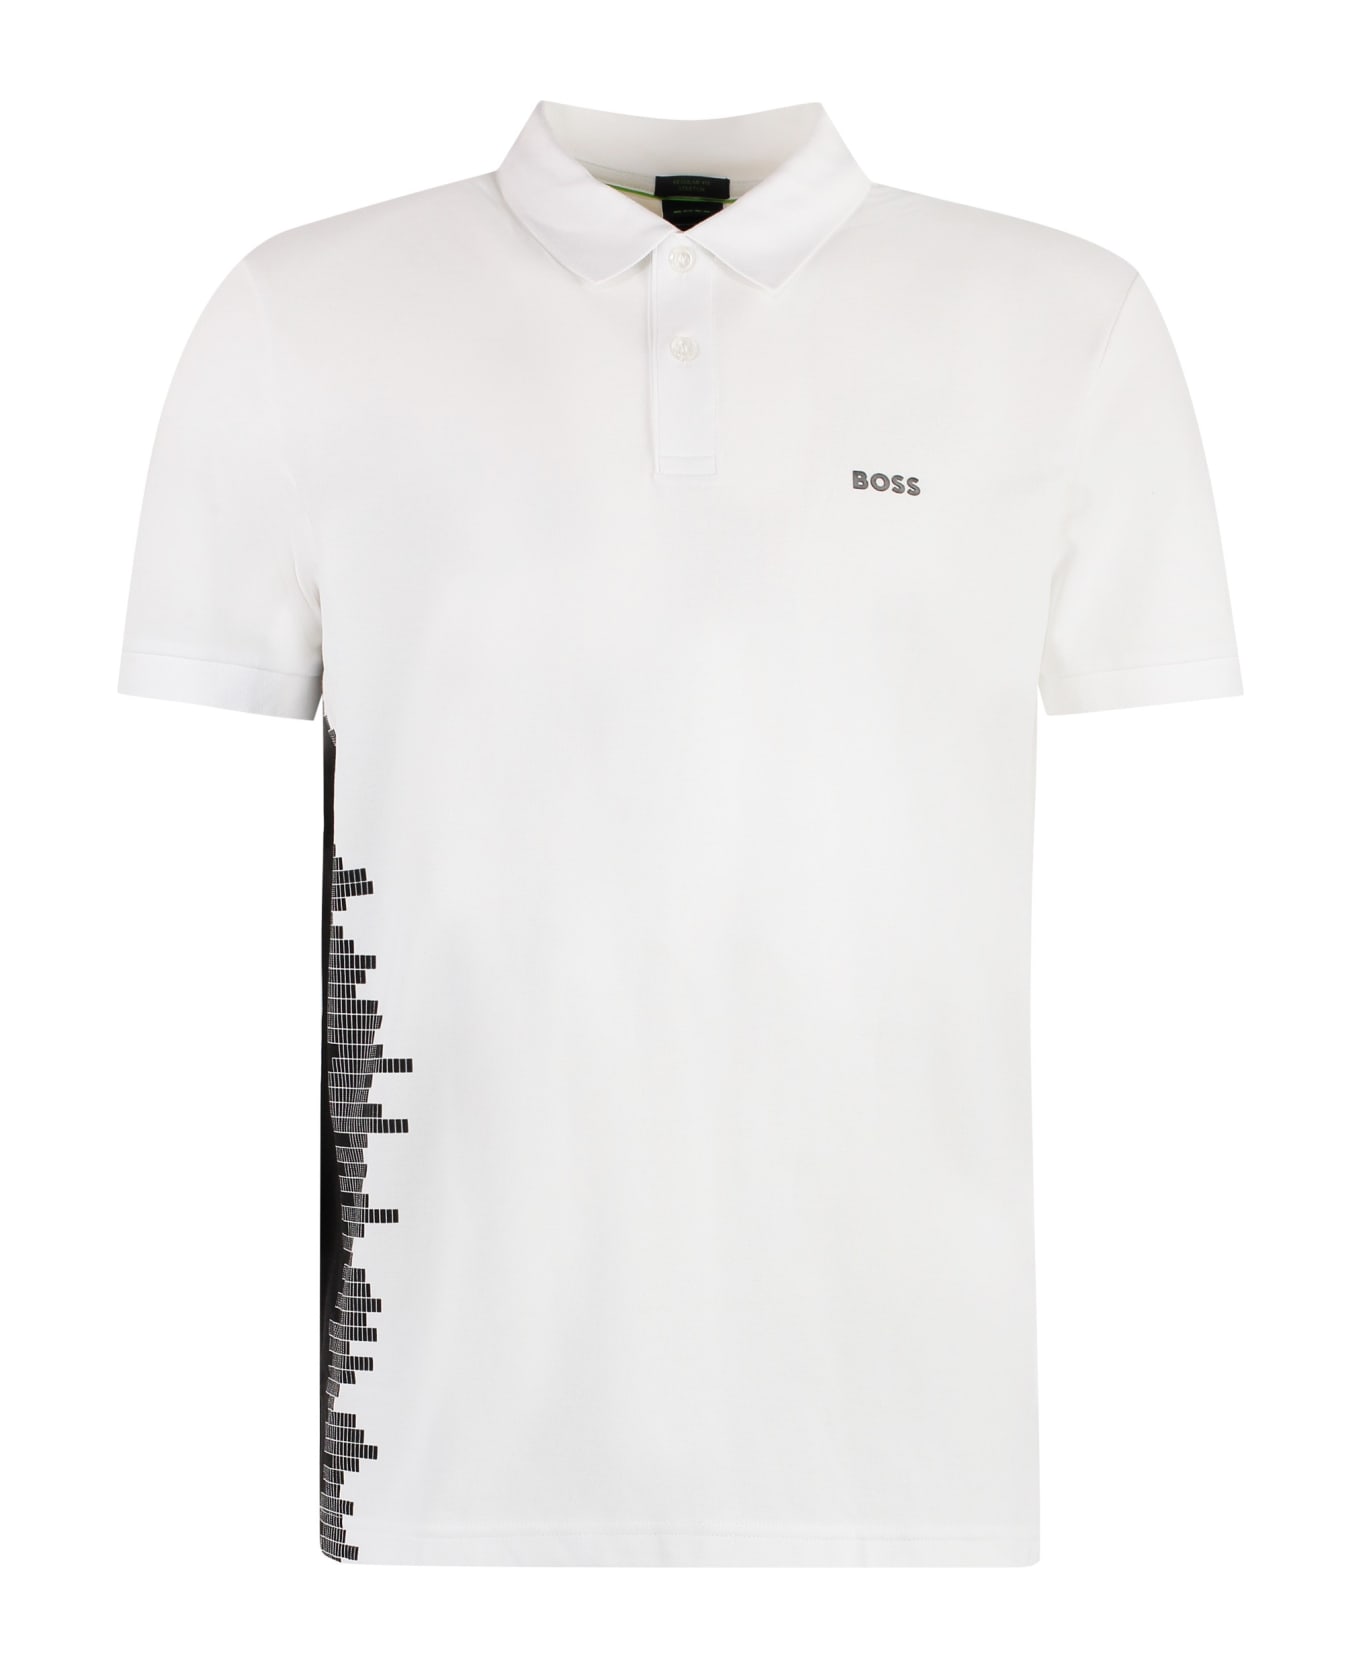 Hugo Boss Short Sleeve Cotton Pique Polo Shirt - White